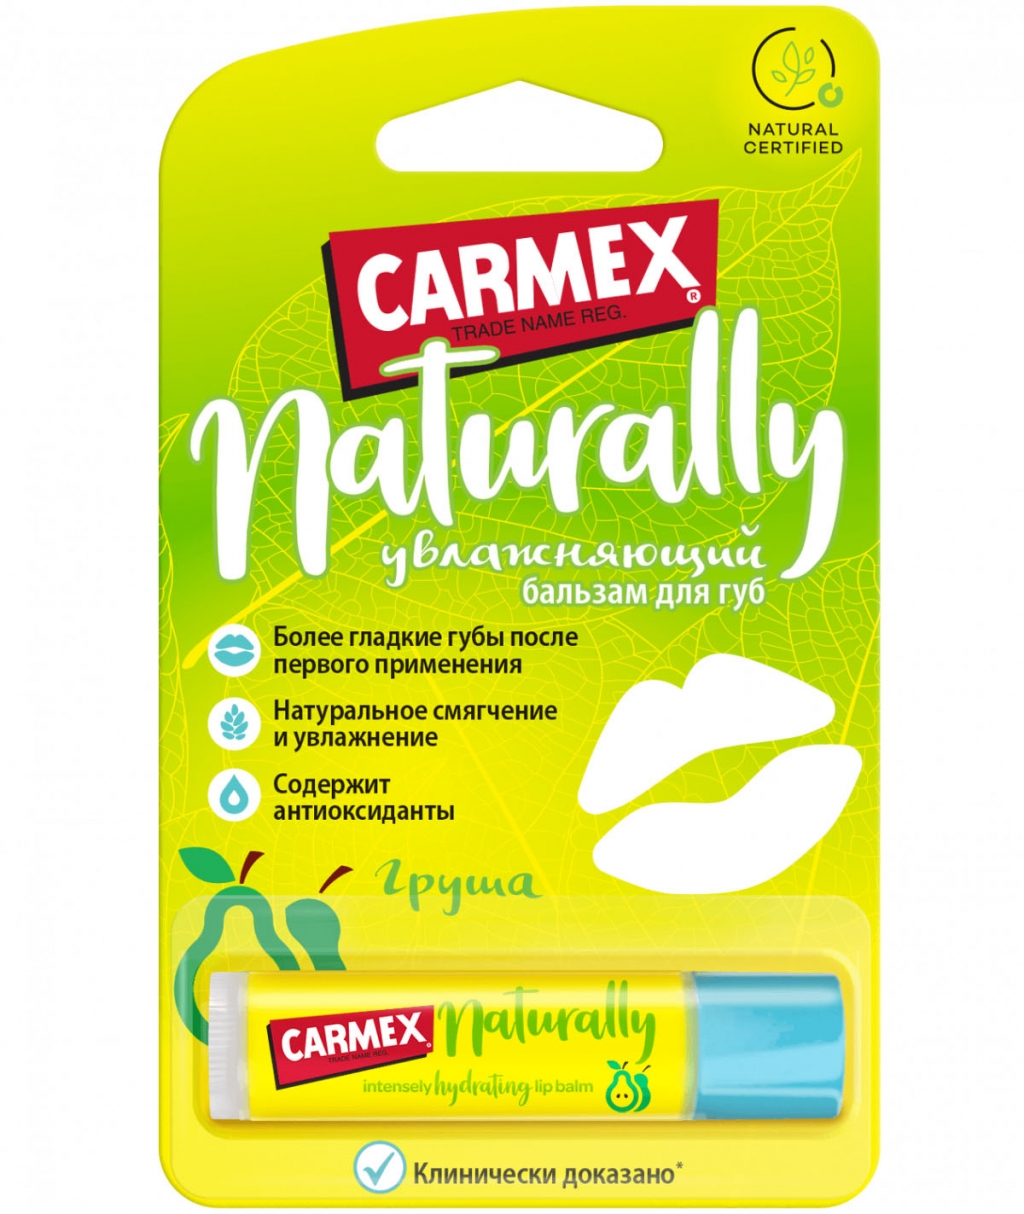 Купить Carmex Натуральный бальзам для губ с ароматом груши в стике, 4.25 гр (Carmex, Naturally)